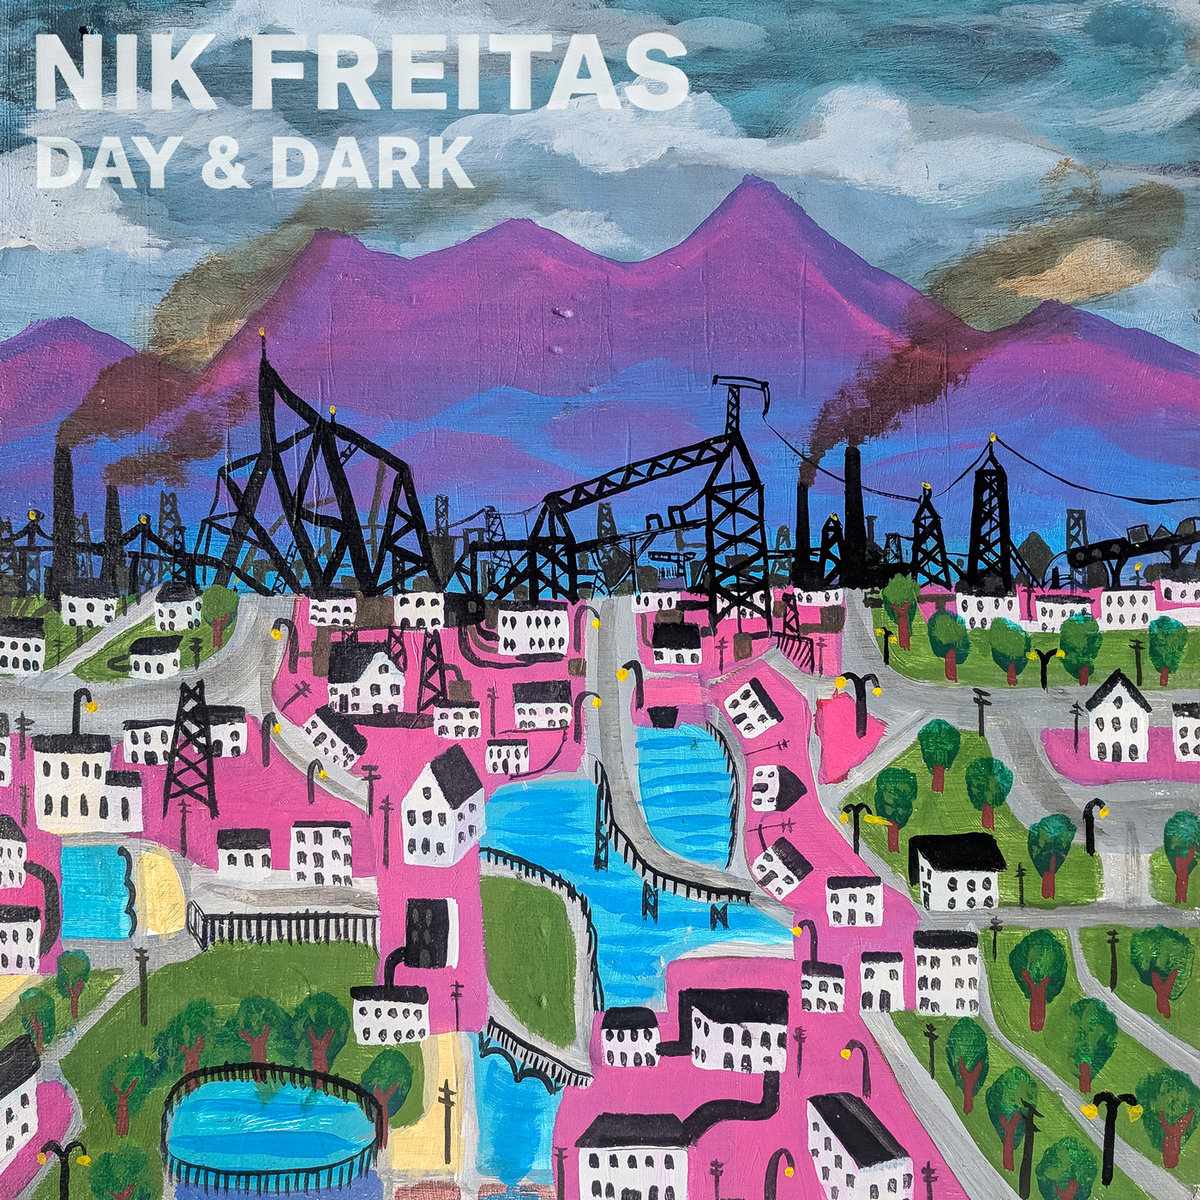 Day & Dark by Nik Freitas